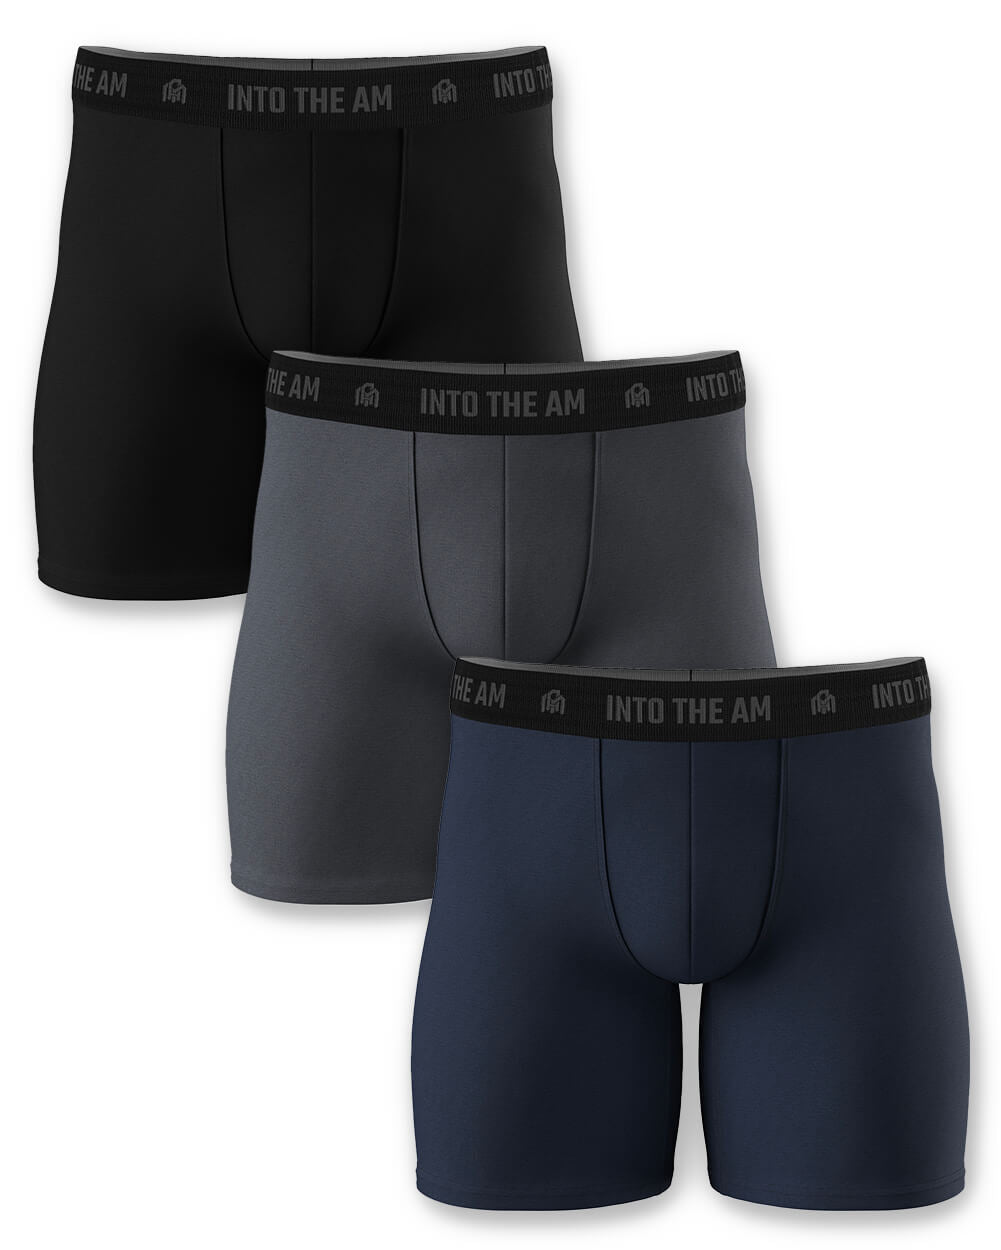 Men Underwear Manufacturer Custom Underwear Factory